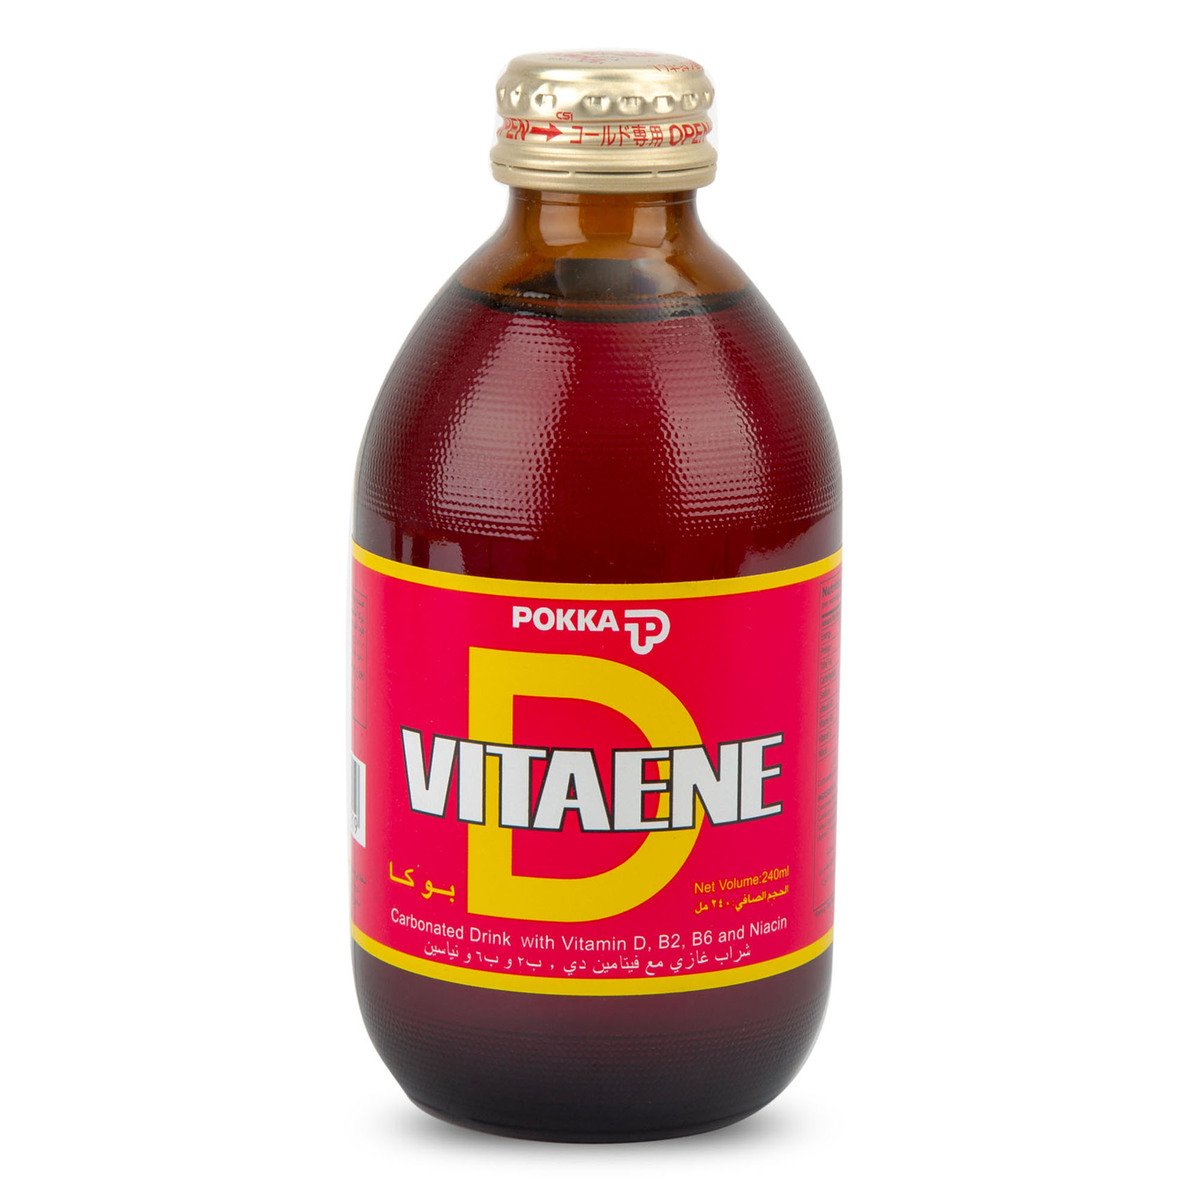 Pokka Vitaene Energy Drink 240 ml